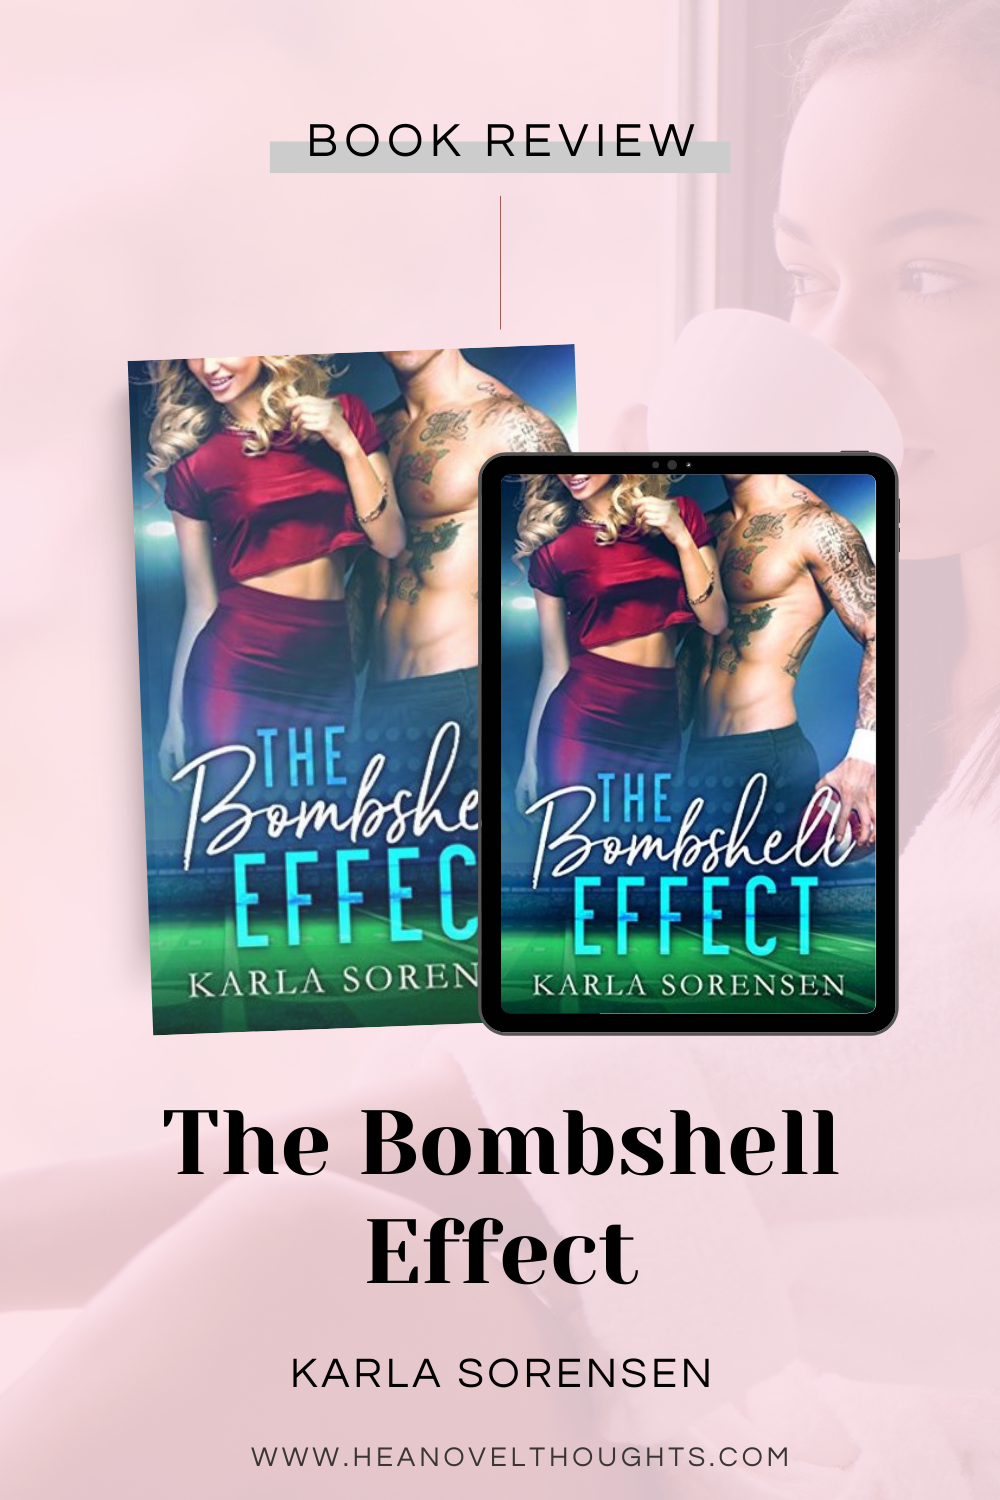 The Bombshell Effect by Karla Sorensen